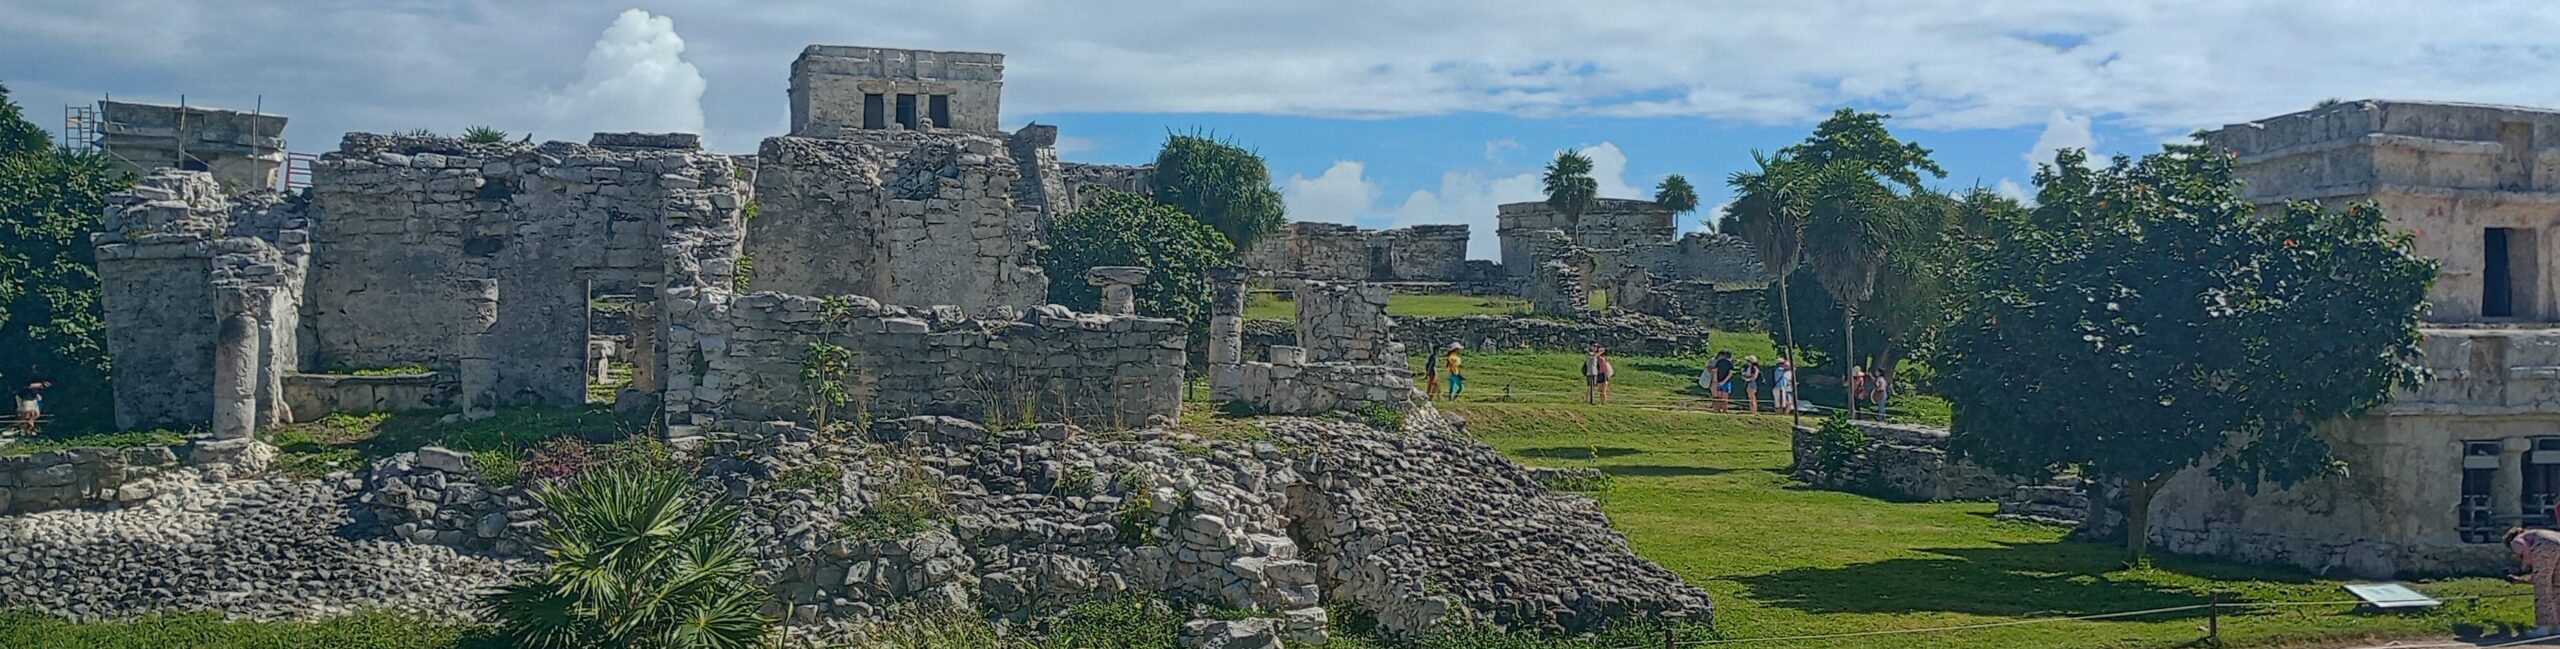 Tulum ruins panorama view